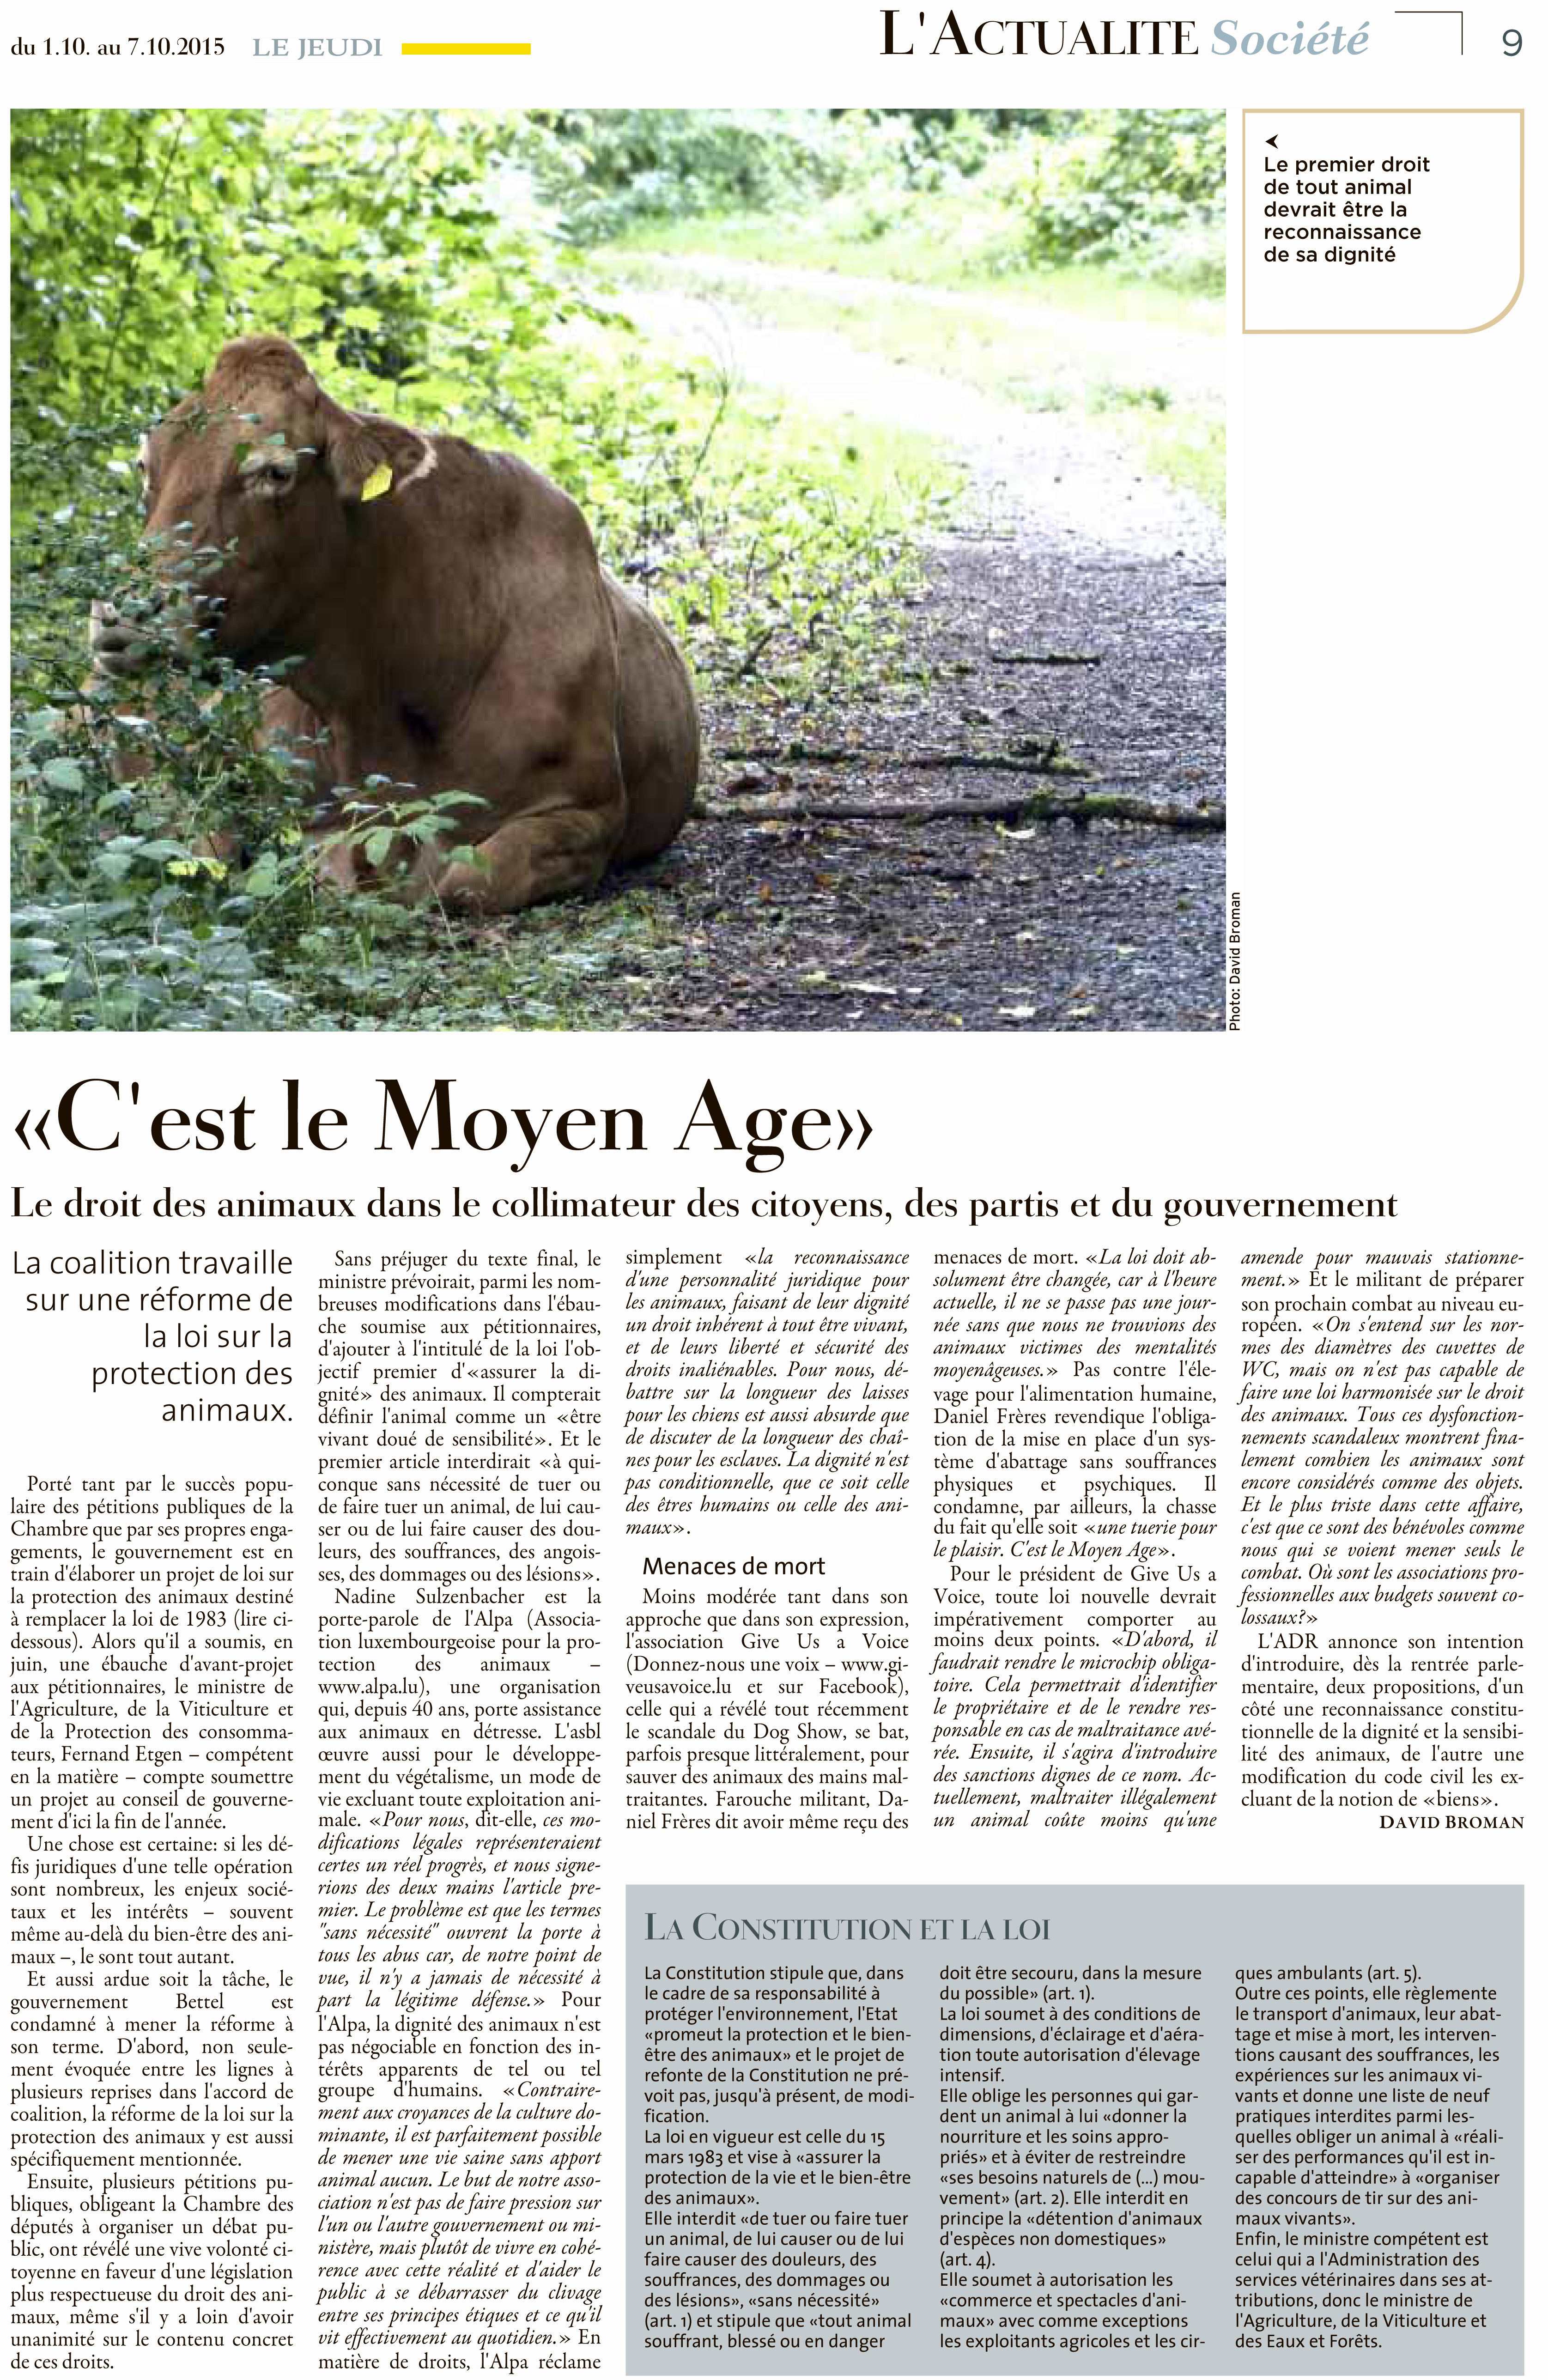 Le Jeudi, Ausgabe: Le Jeudi, vom: Donnerstag, 1. Oktober 2015